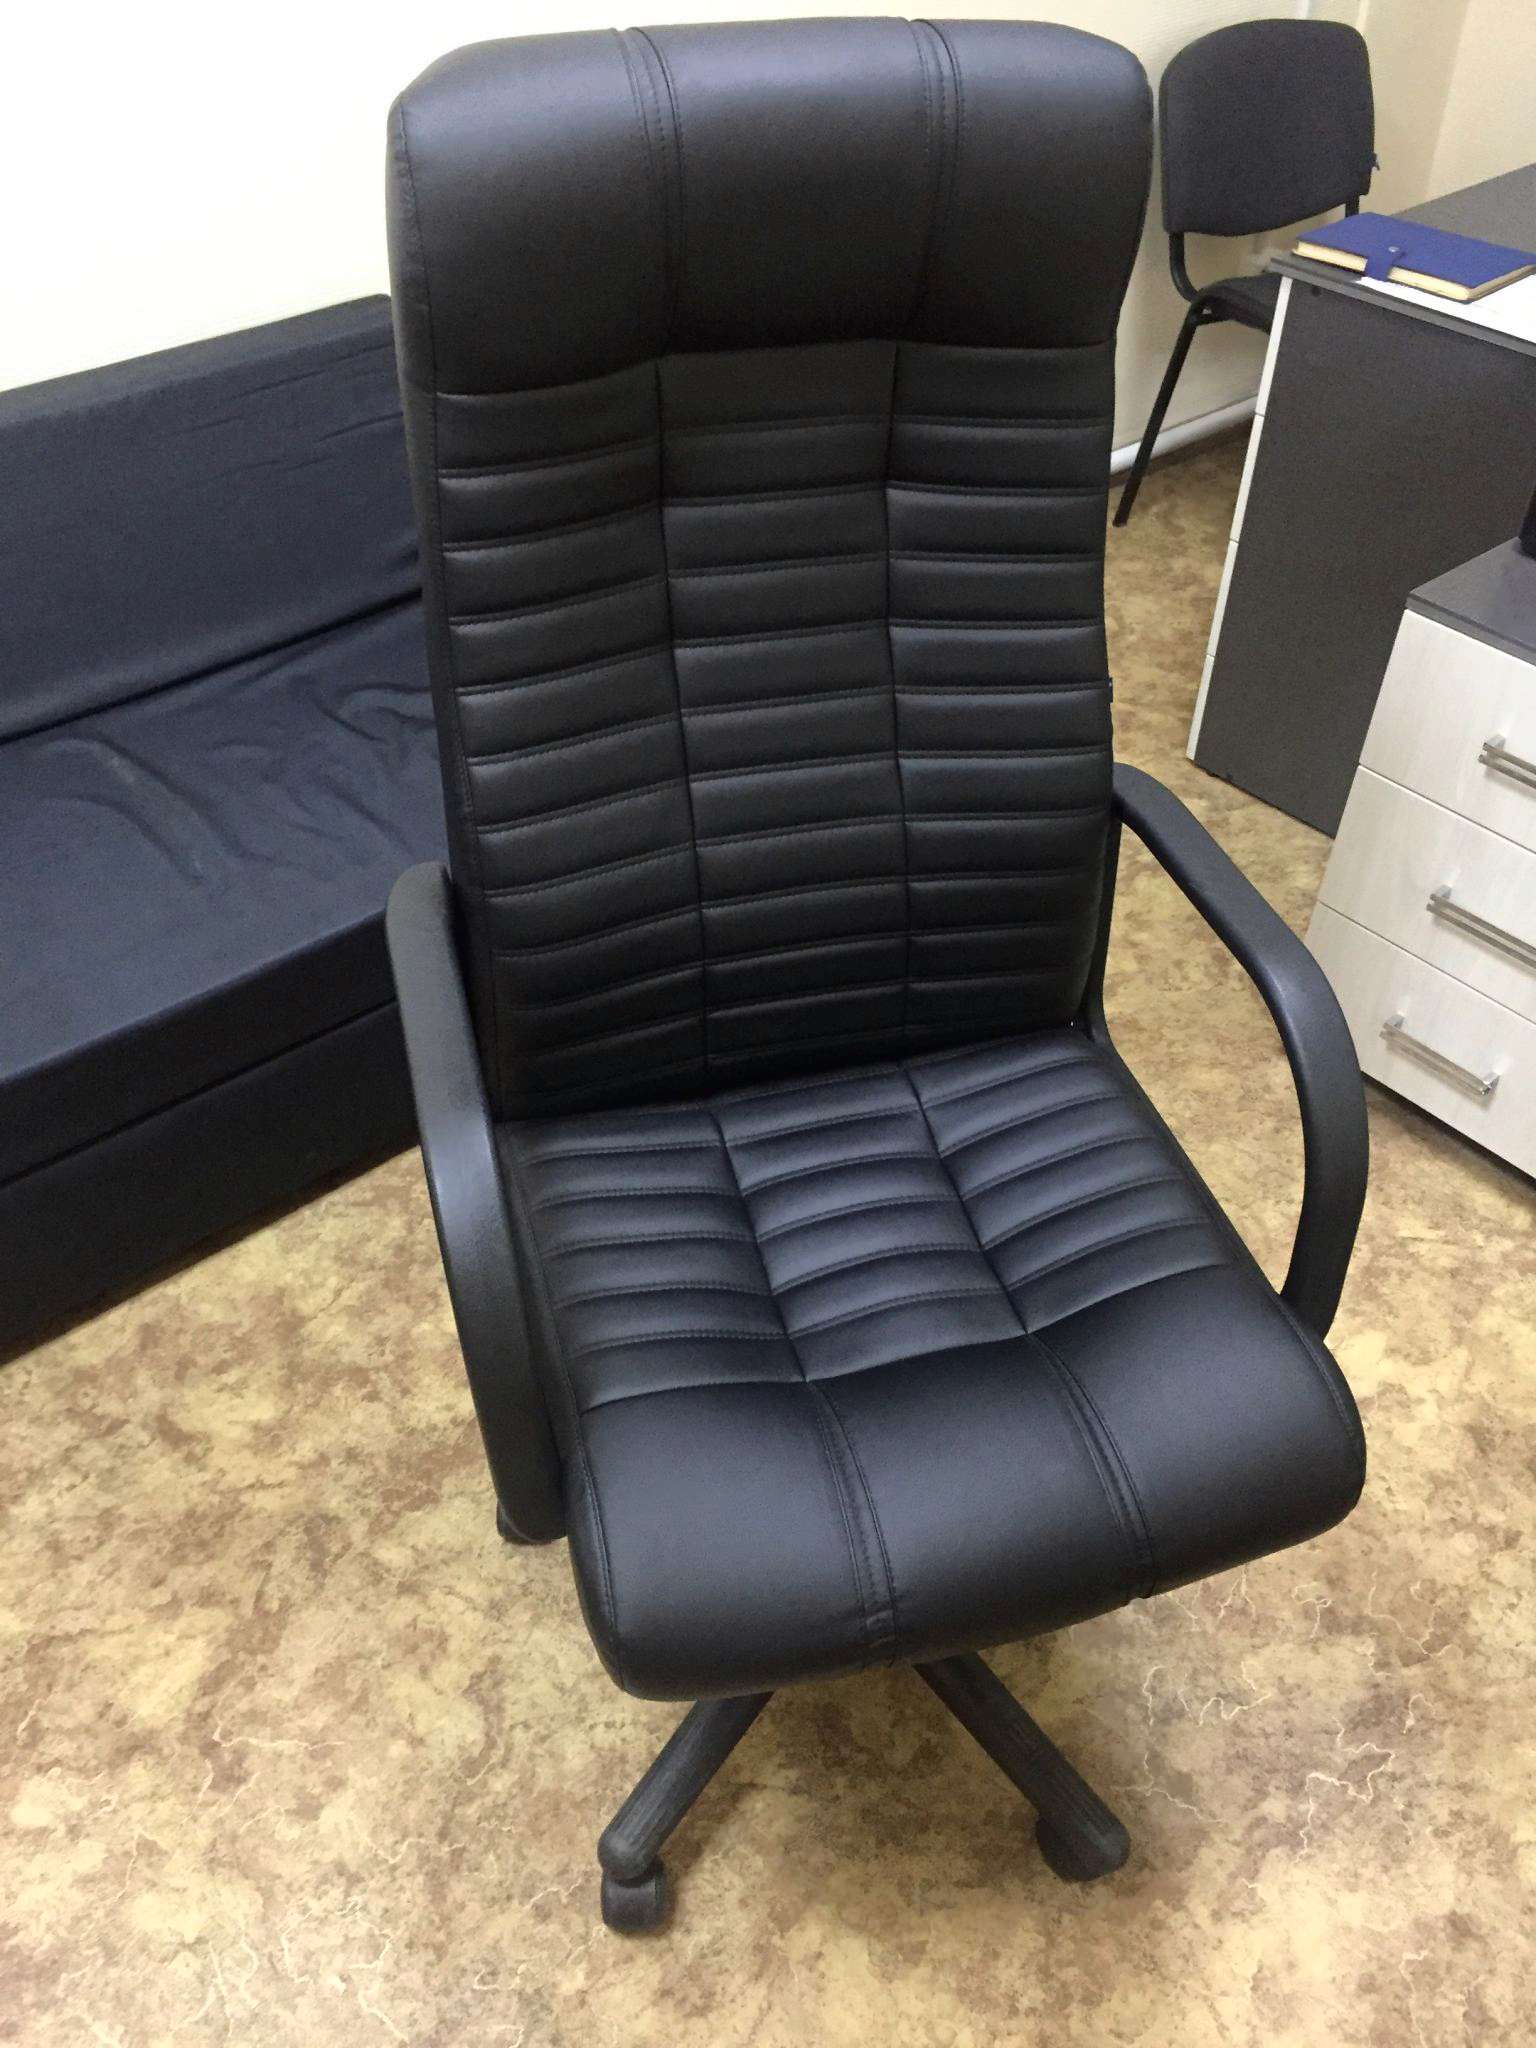 Кресло руководителя nowy styl, орман BX Eco-30 черн.